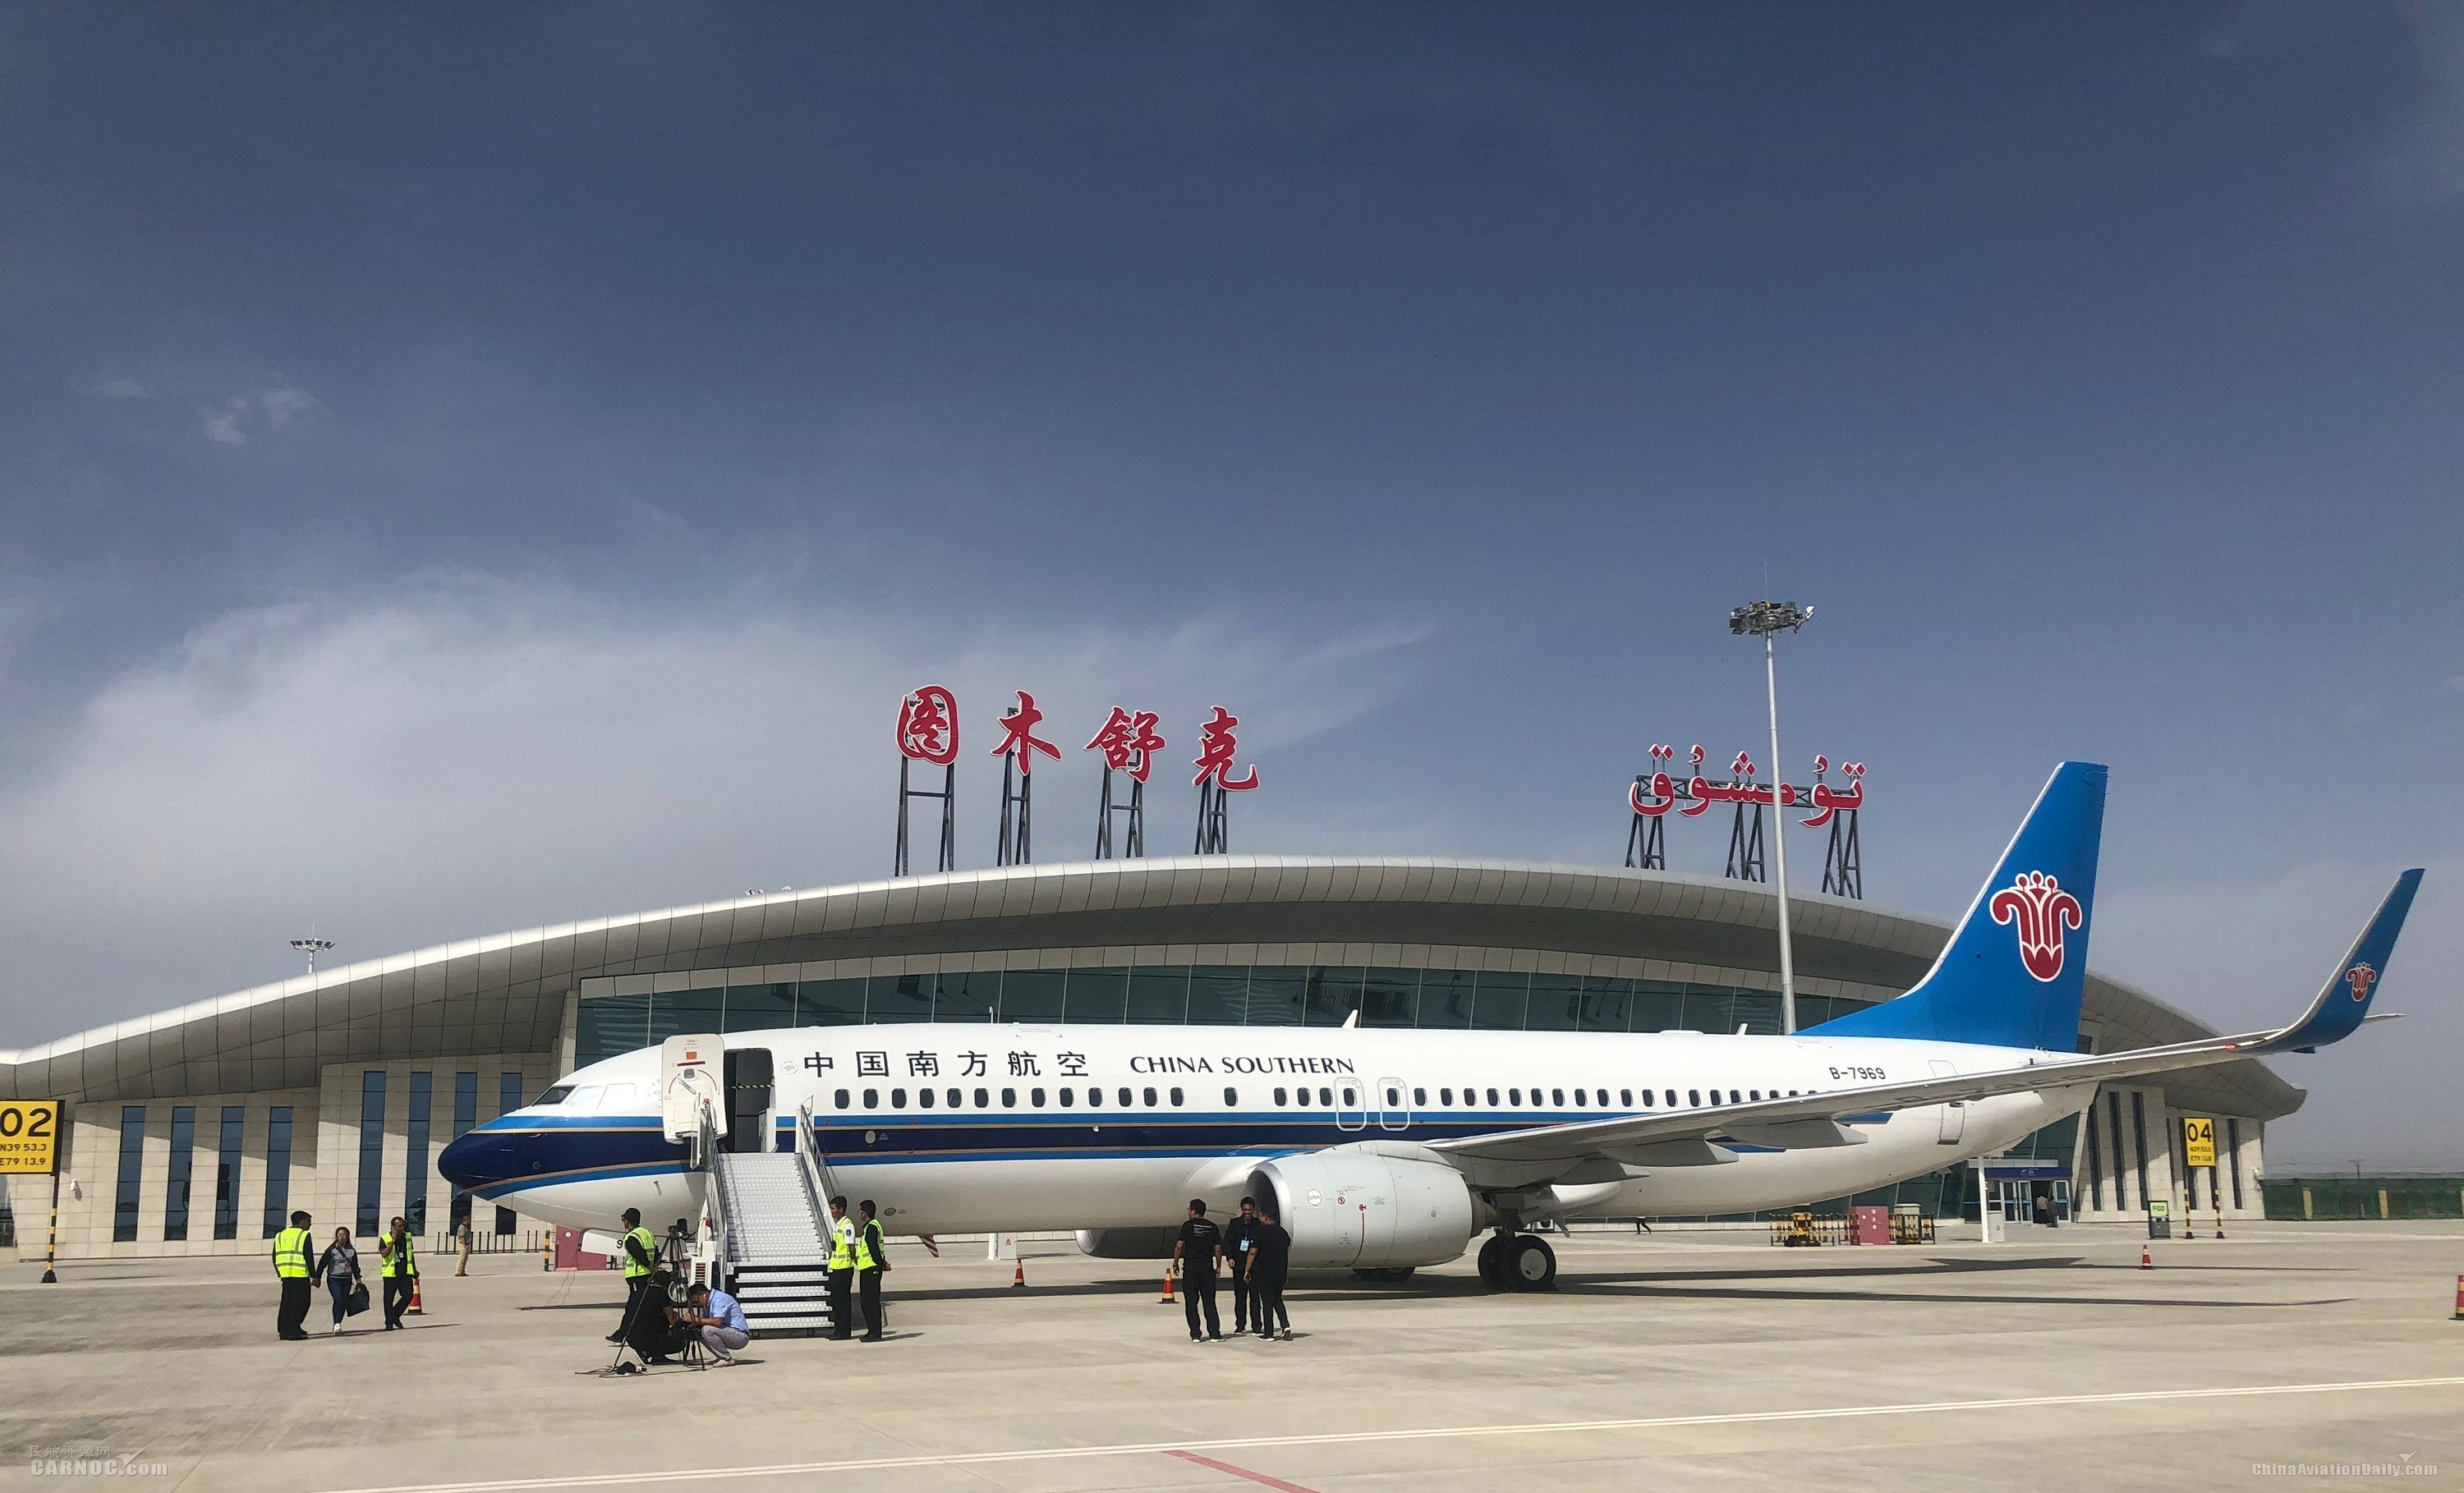 地区:喀什 喀什机场,位于中国新疆维吾尔自治区喀什地区喀什市,距离